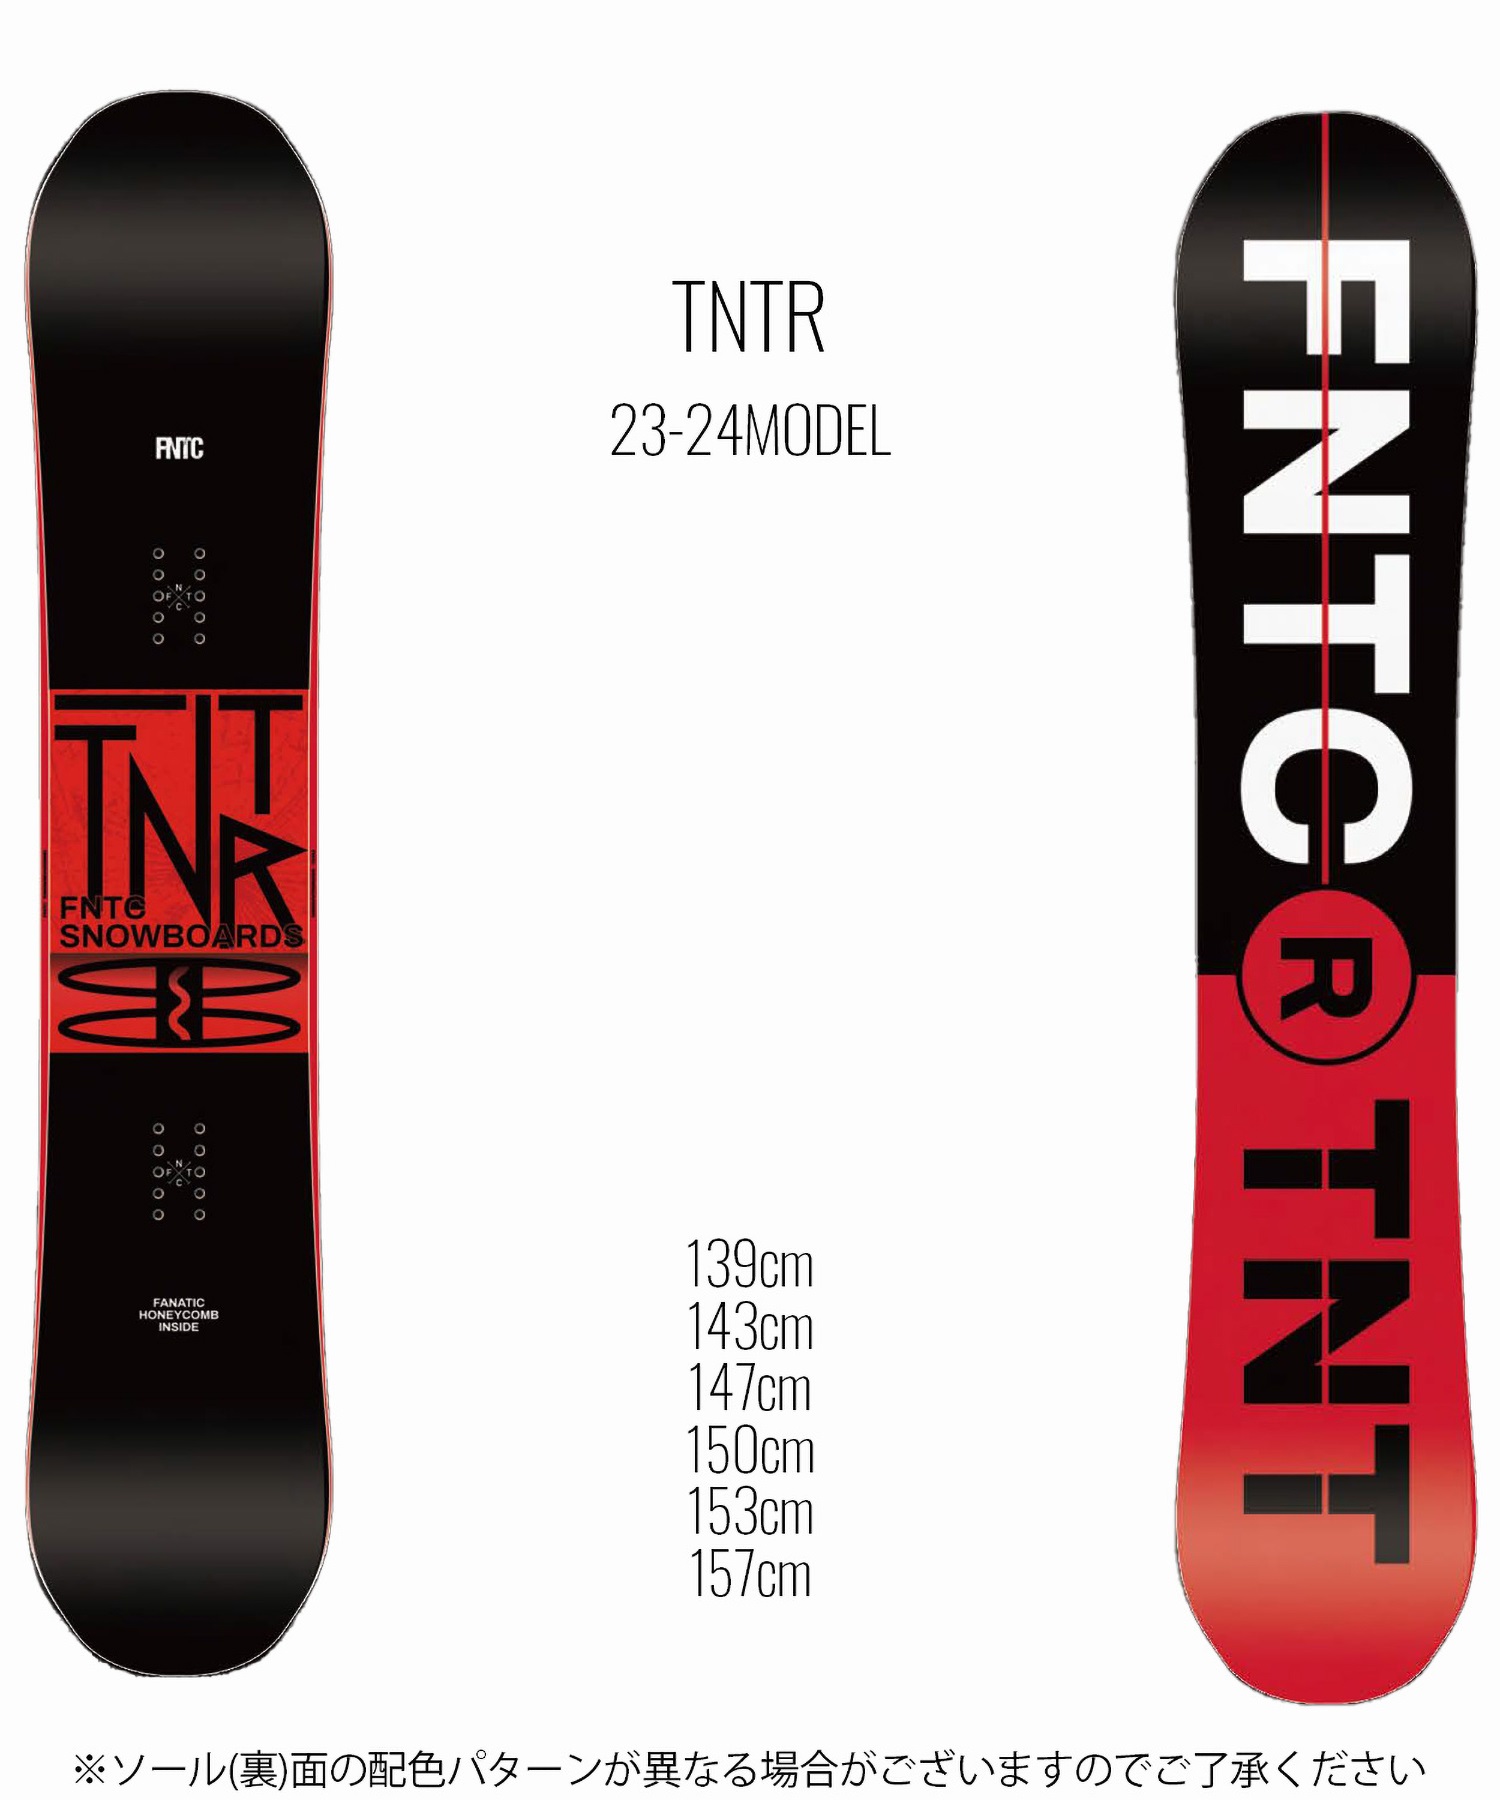 スノボー板(FNTC TNT)板のみ - スノーボード